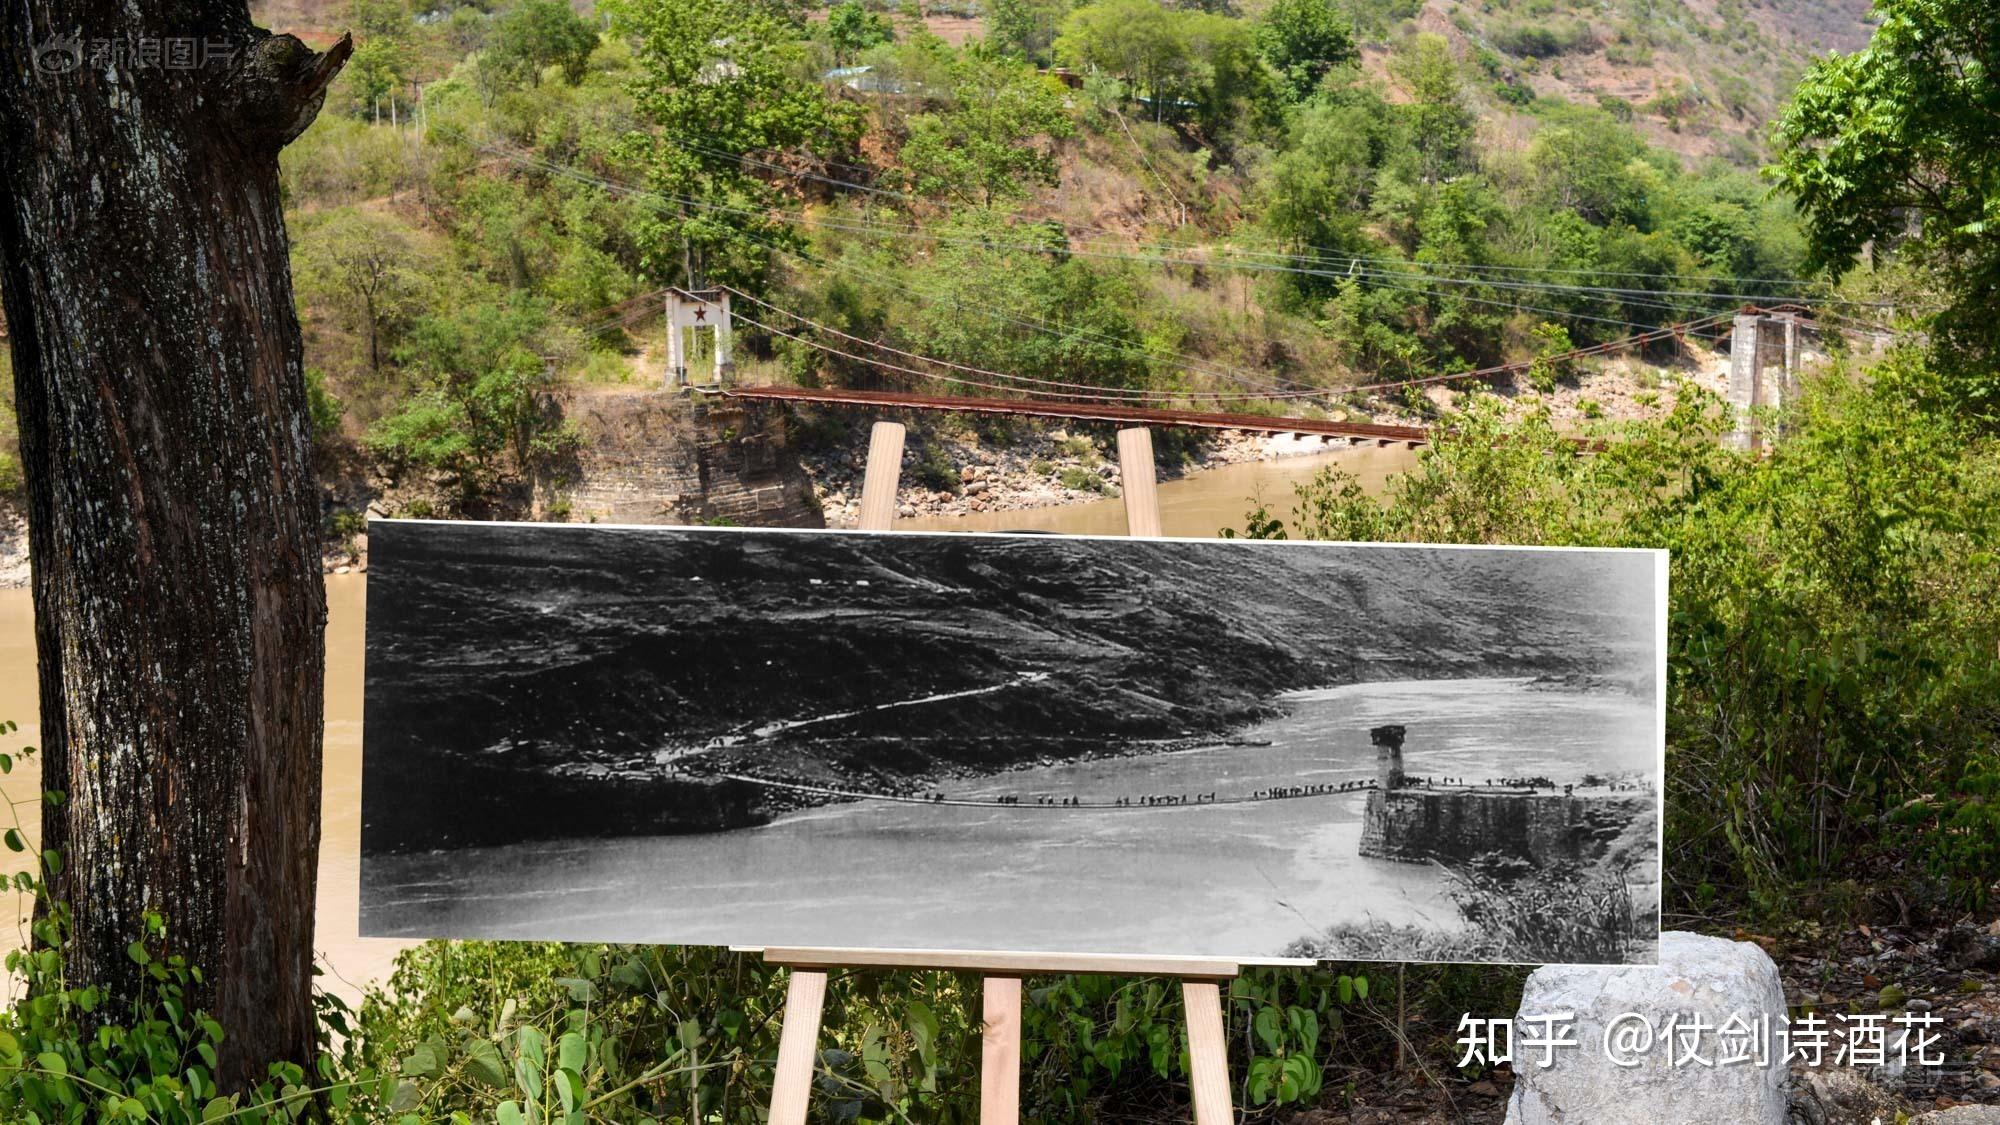 中国远征军雕塑群所在地松山 二战最完整战场遗址 | 北晚新视觉